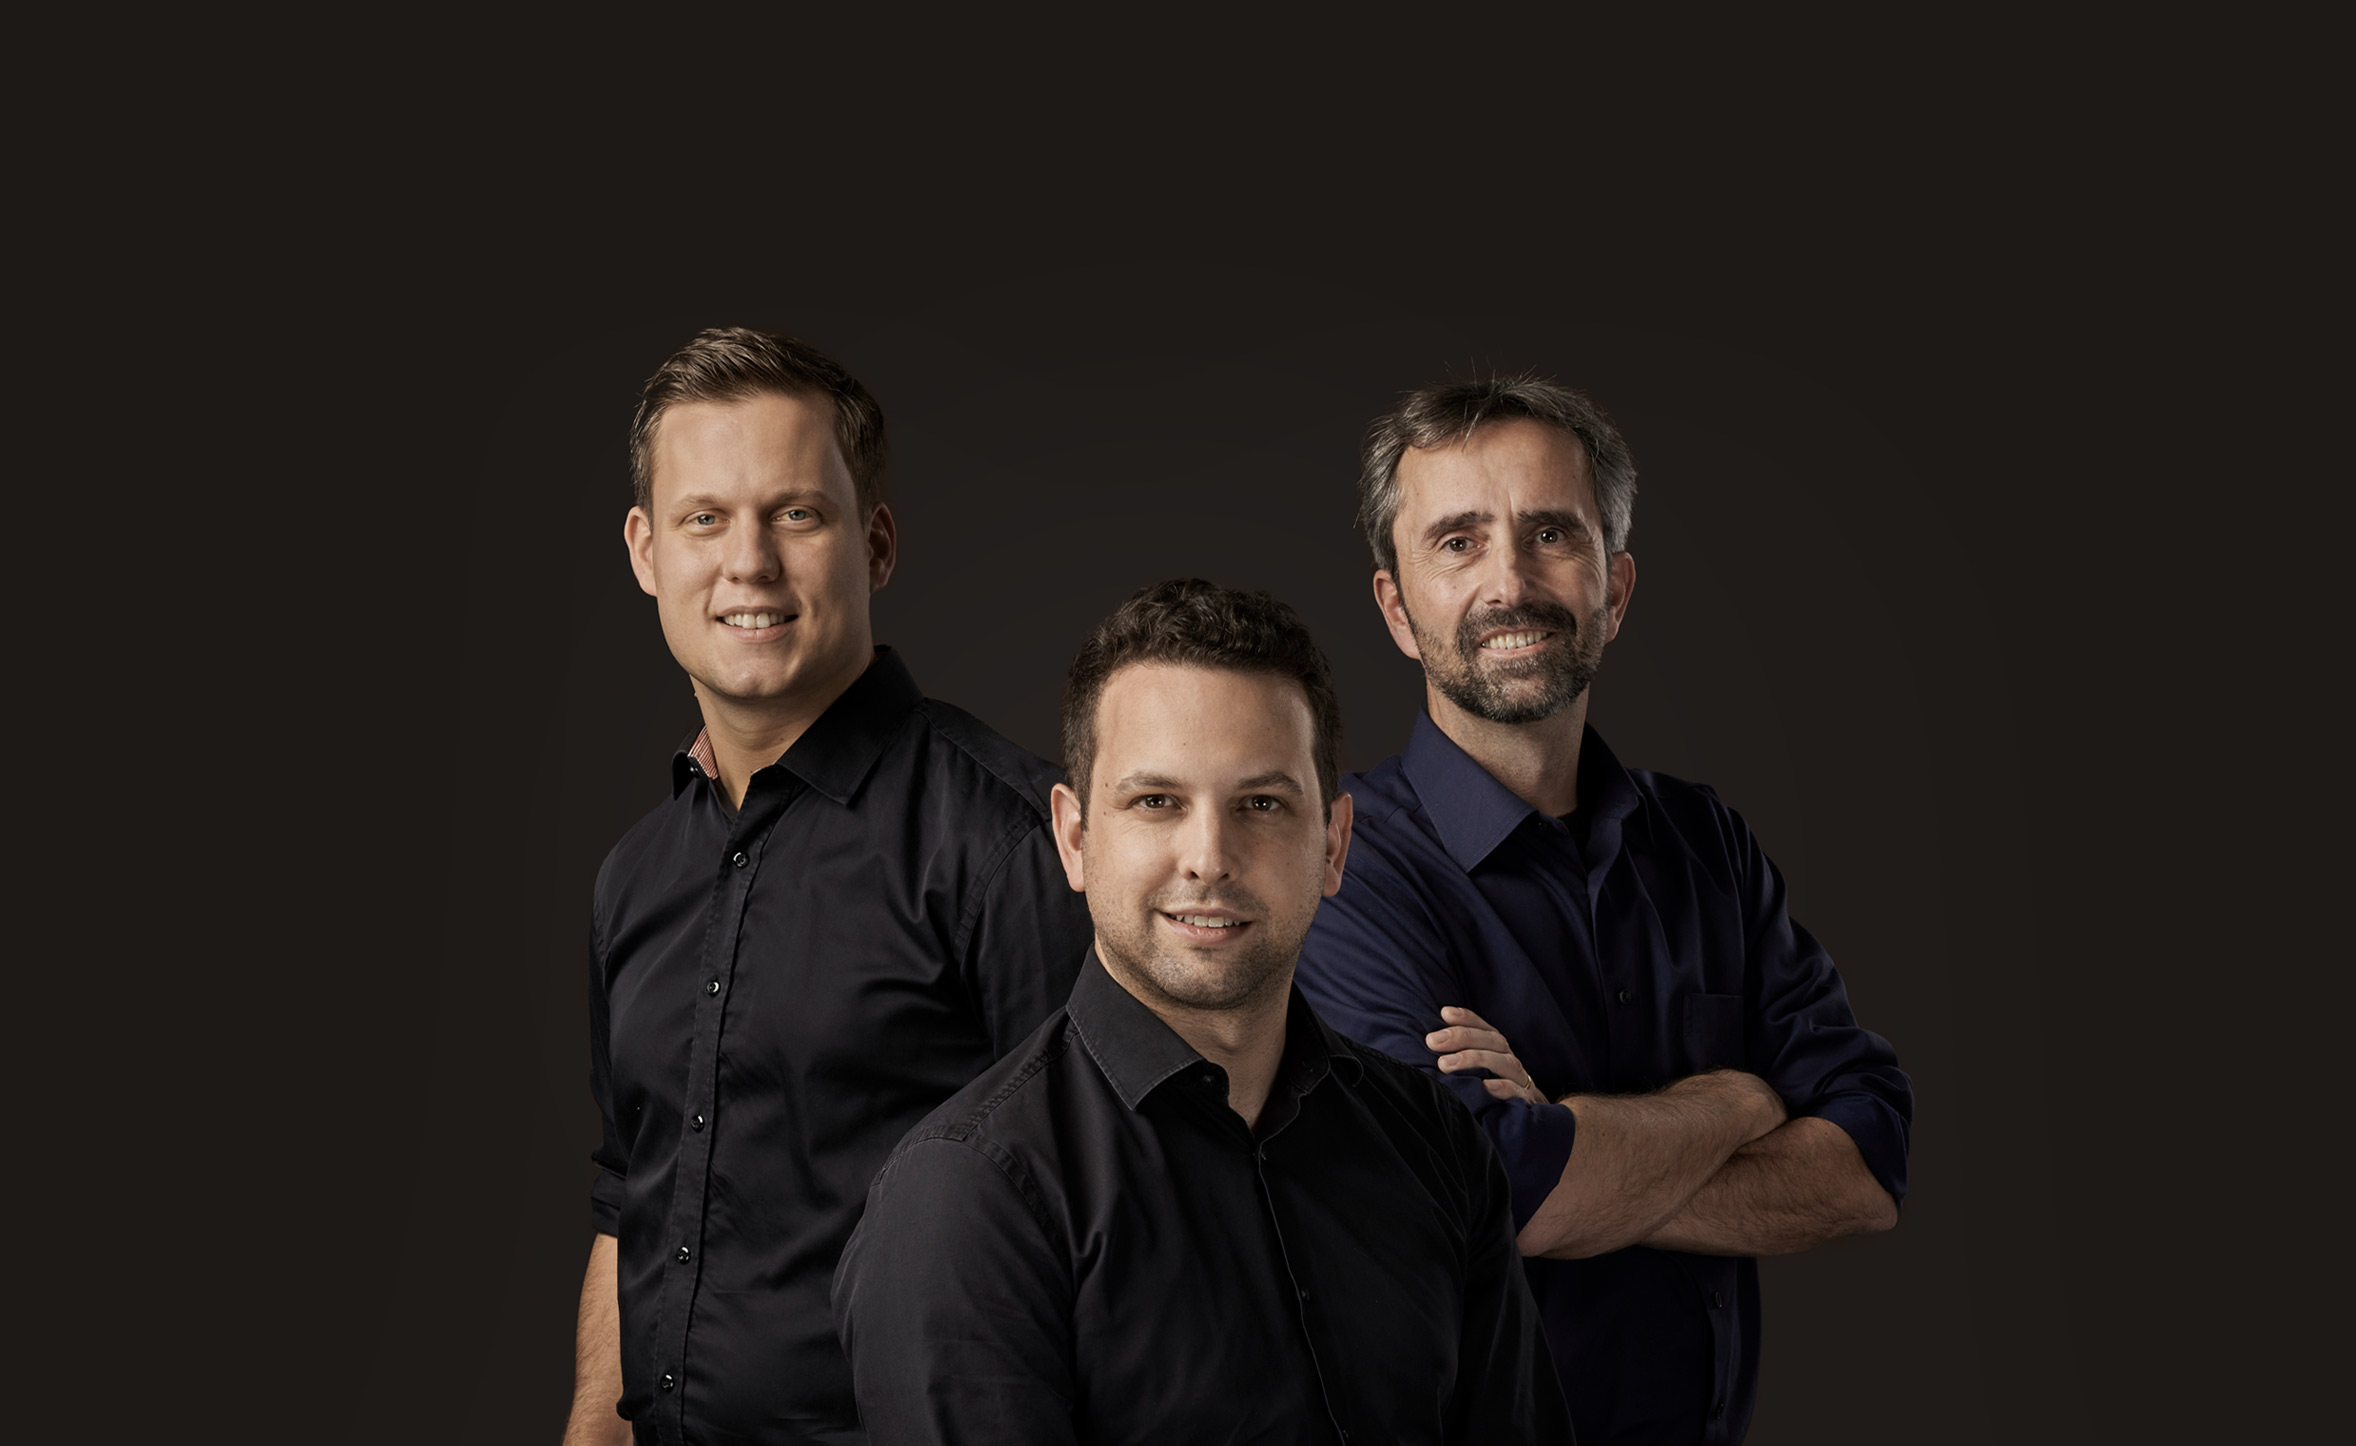 The owners of Partner Ingenieure AG: Matthias Vogelsang, Samuel Hangartner, Volker Wouters